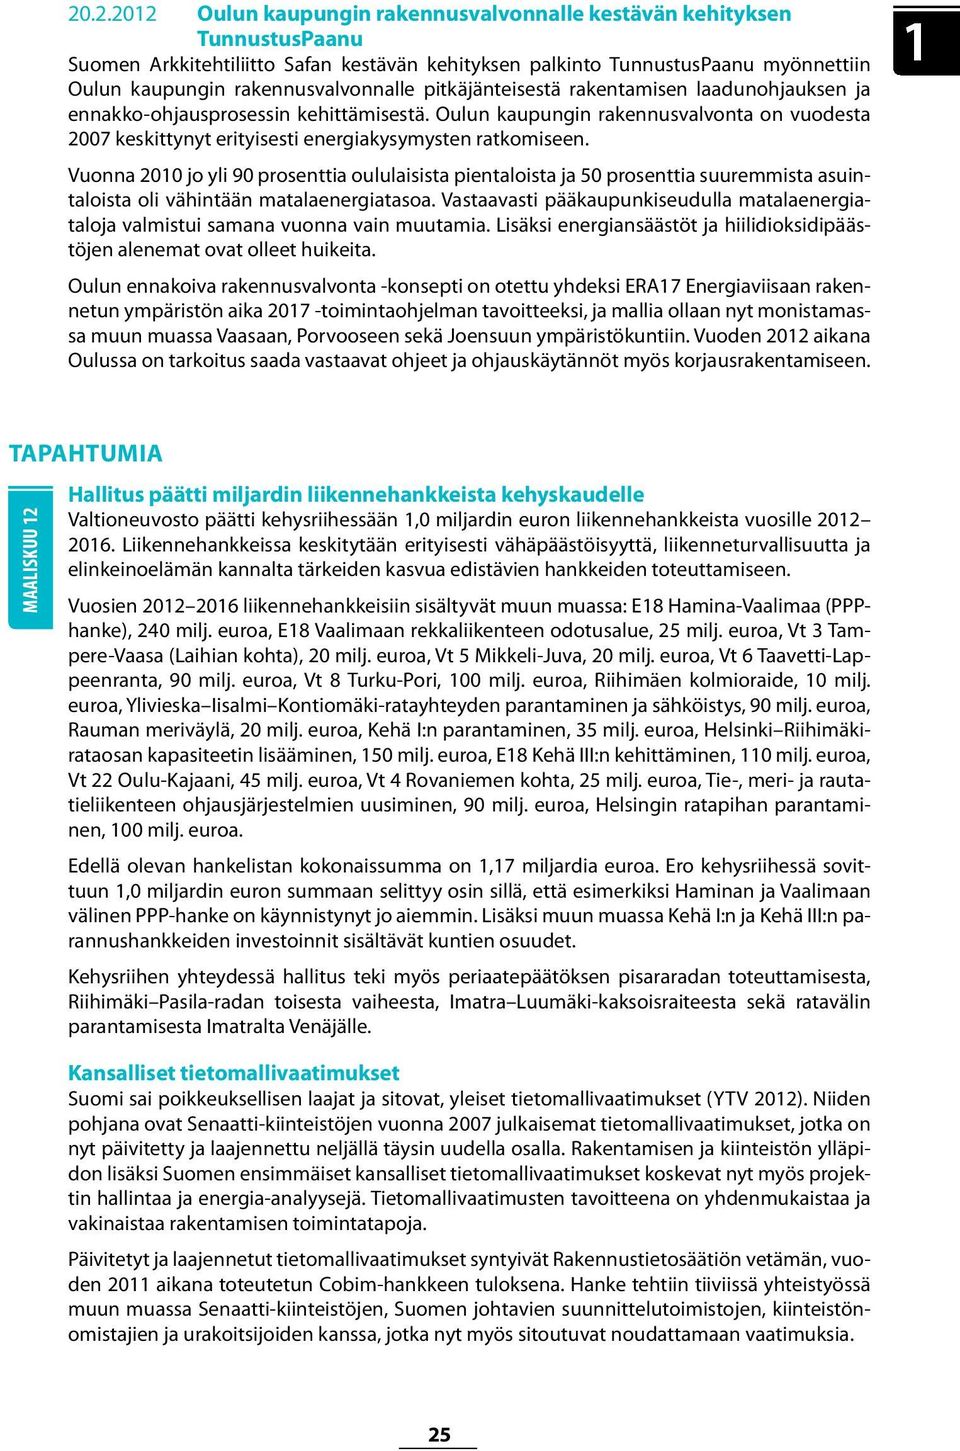 Oulun kaupungin rakennusvalvonta on vuodesta 2007 keskittynyt erityisesti energiakysymysten ratkomiseen.